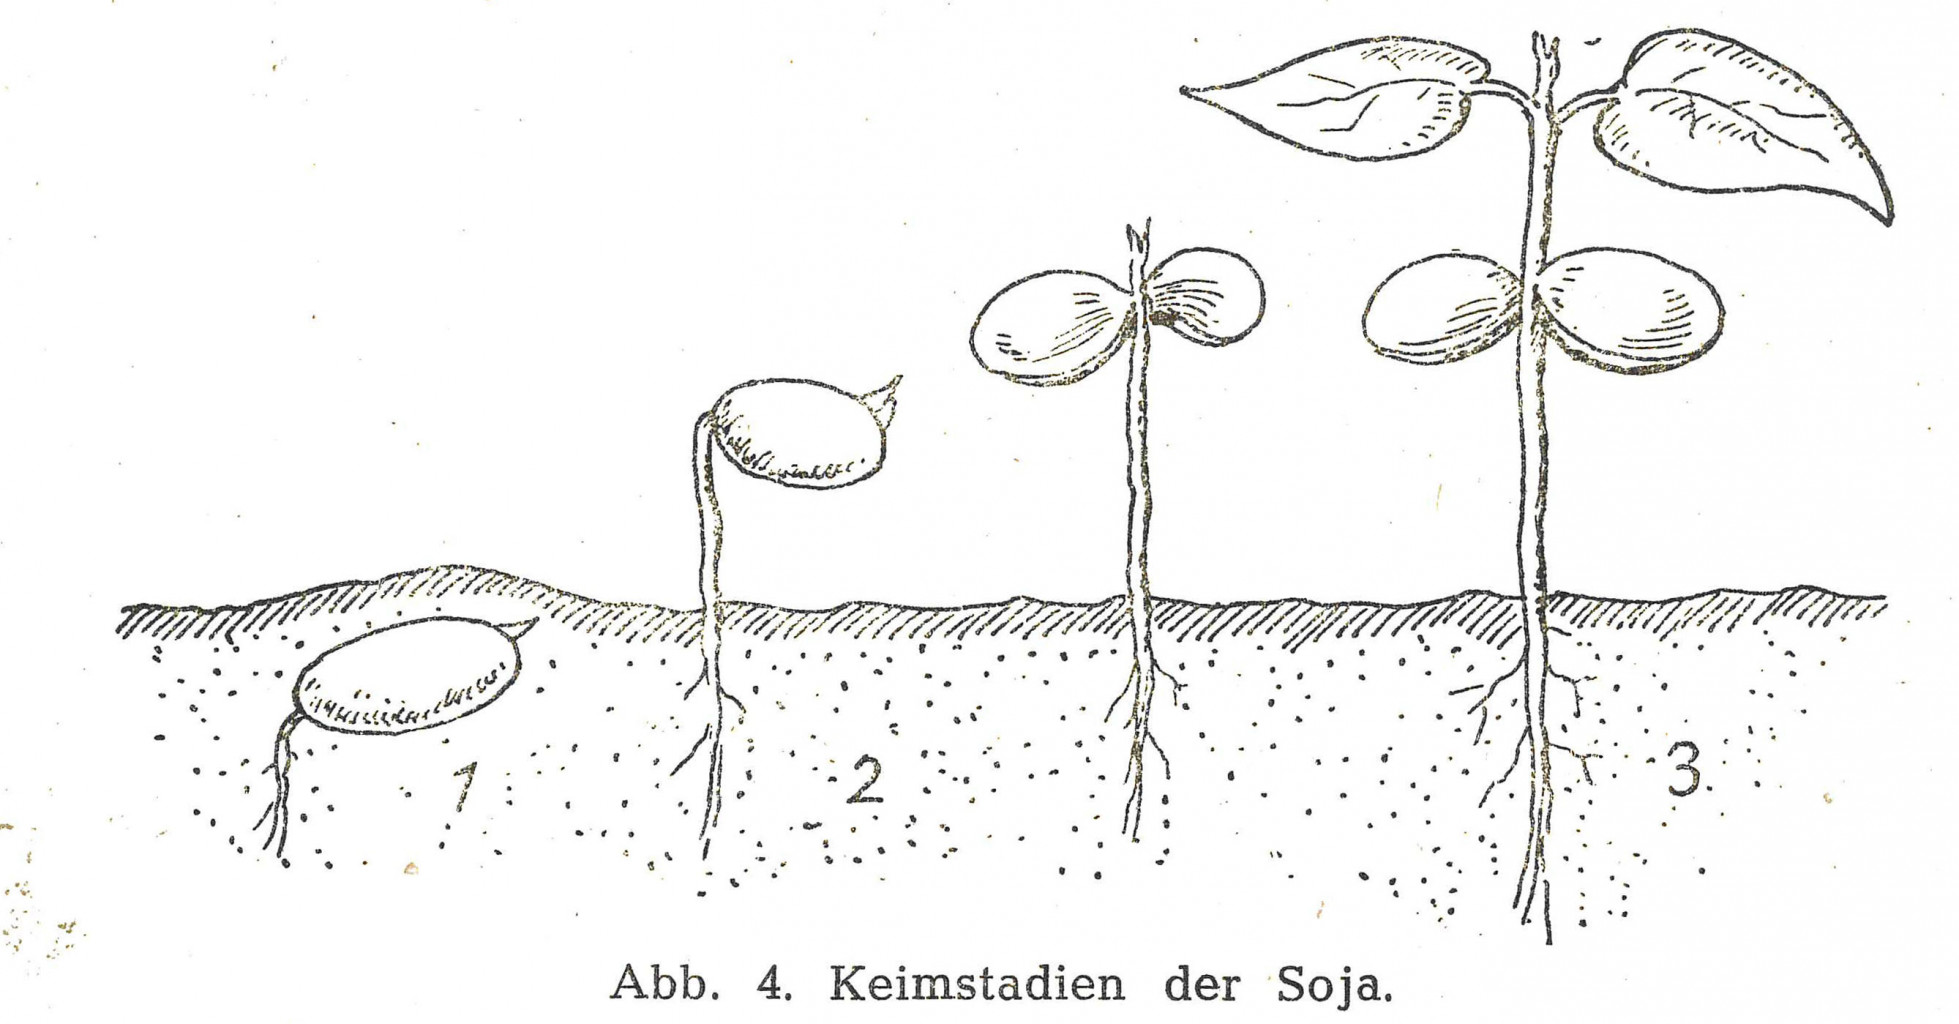 Die Illustration zeigt vier Sojapflanzen in unterschiedlichen Keimstadien. Unter der Zeichnung steht der Untertitel „Abb. 4. Keimstadien der Soja.“.